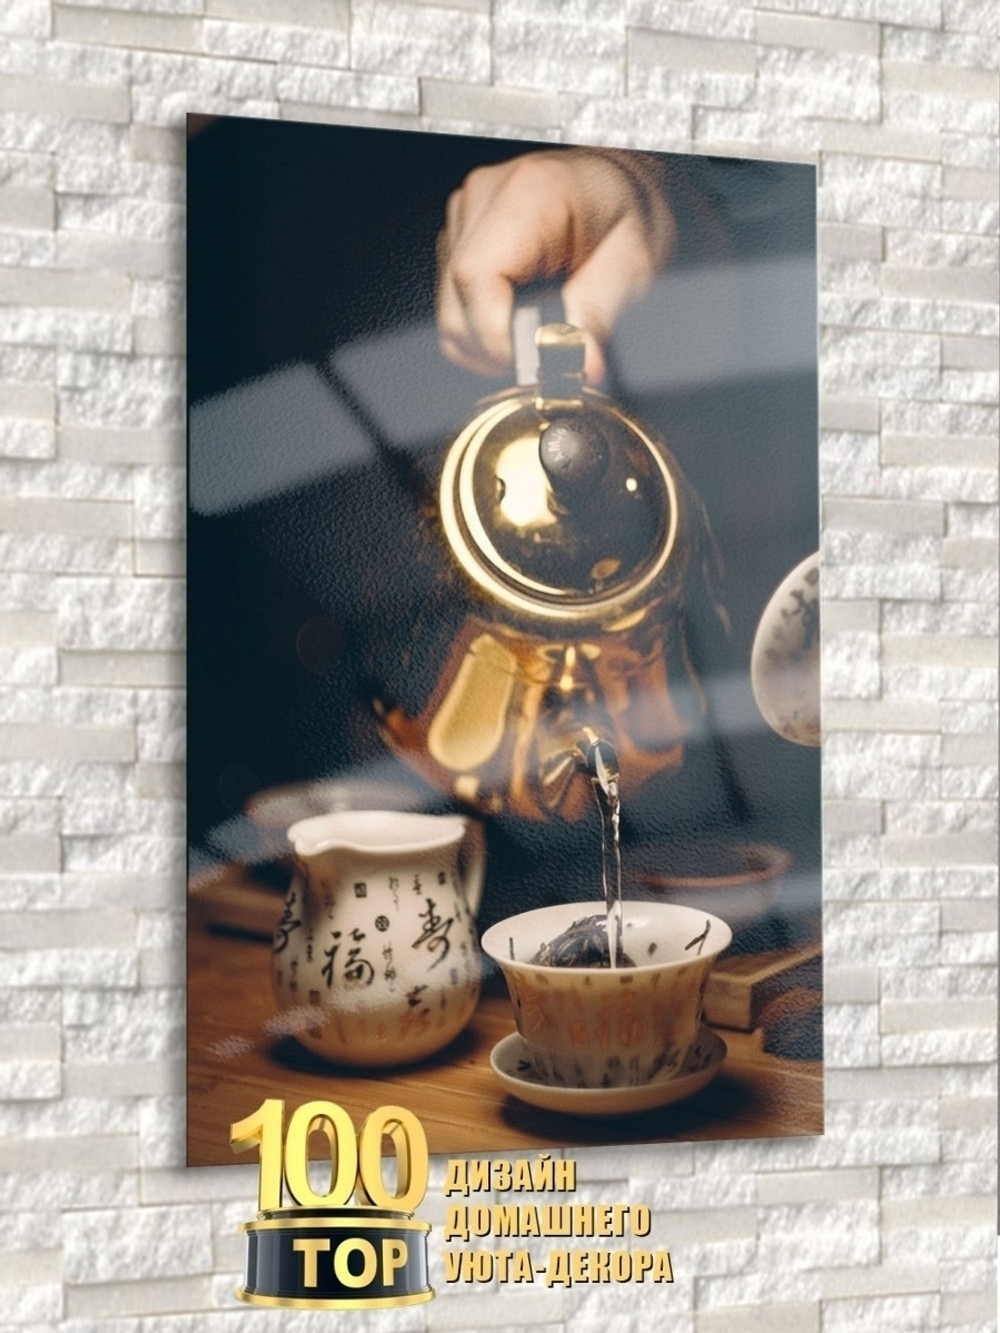 Модульная стеклянная интерьерная картина / Фотокартина на кухню / Чашка чая / Чайная трапеза, 28x40 Декор для дома, подарок